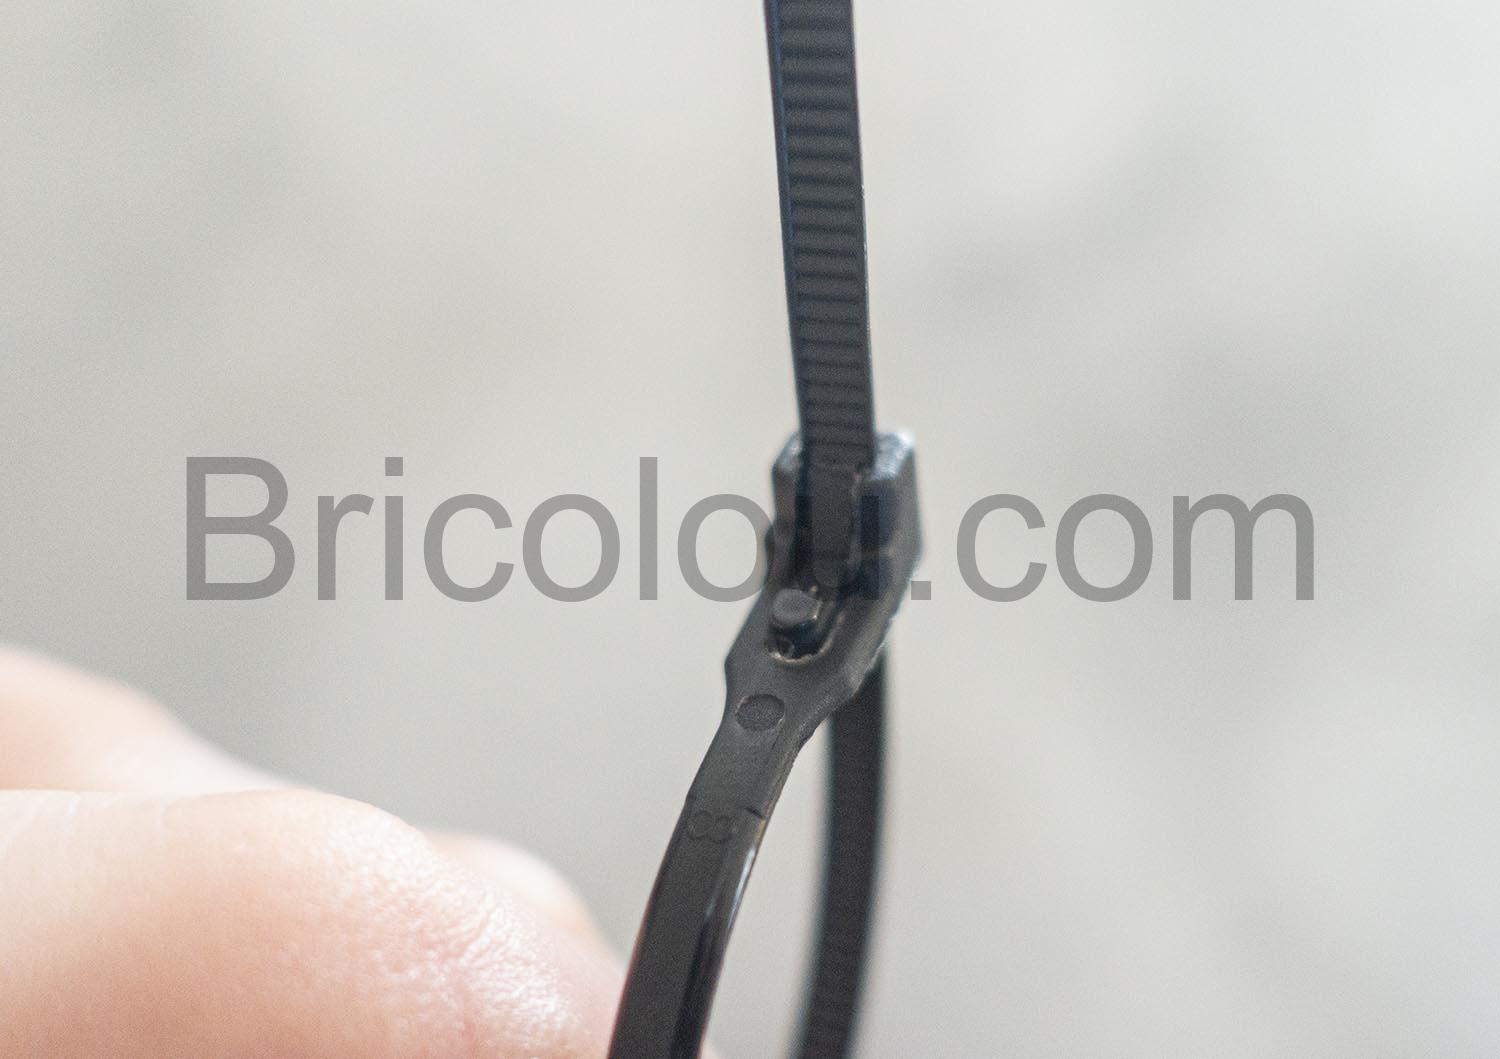 IOXQP serre-câbles 150 x 4 mm Collier de Serrage Réutilisable